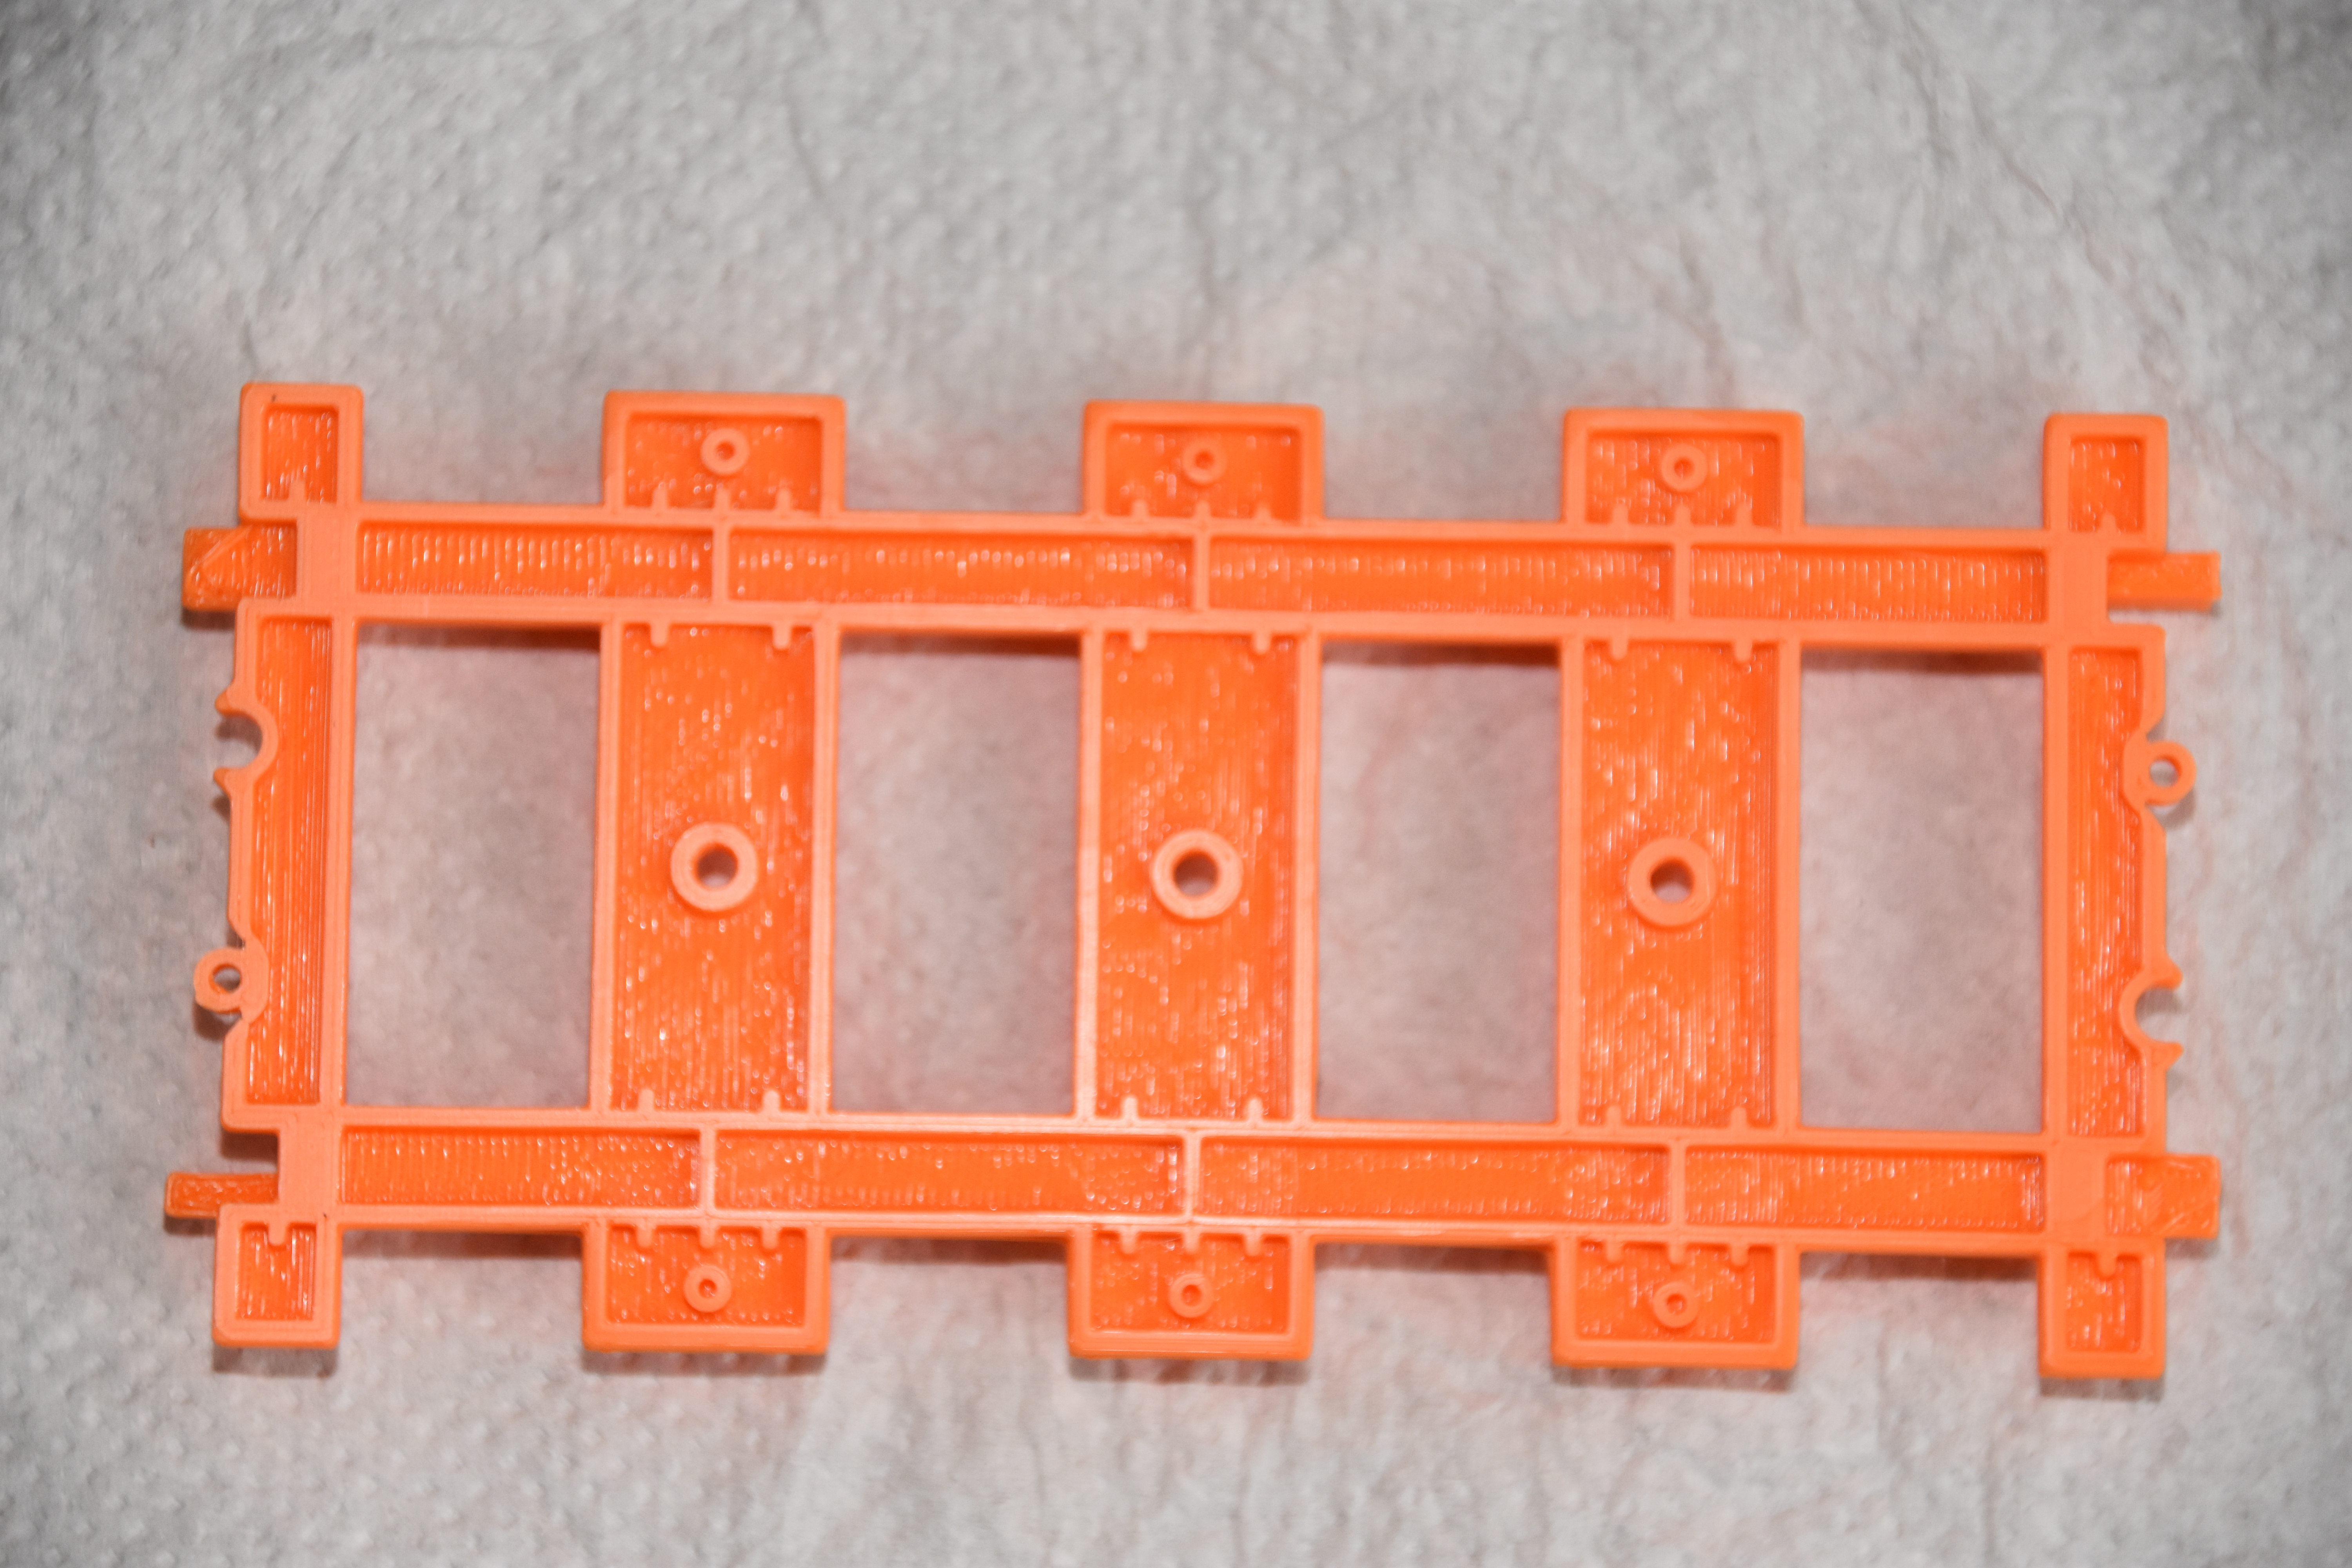 Rail train Lego optimisé pour connexion par dessous (utilisation de poteaux)